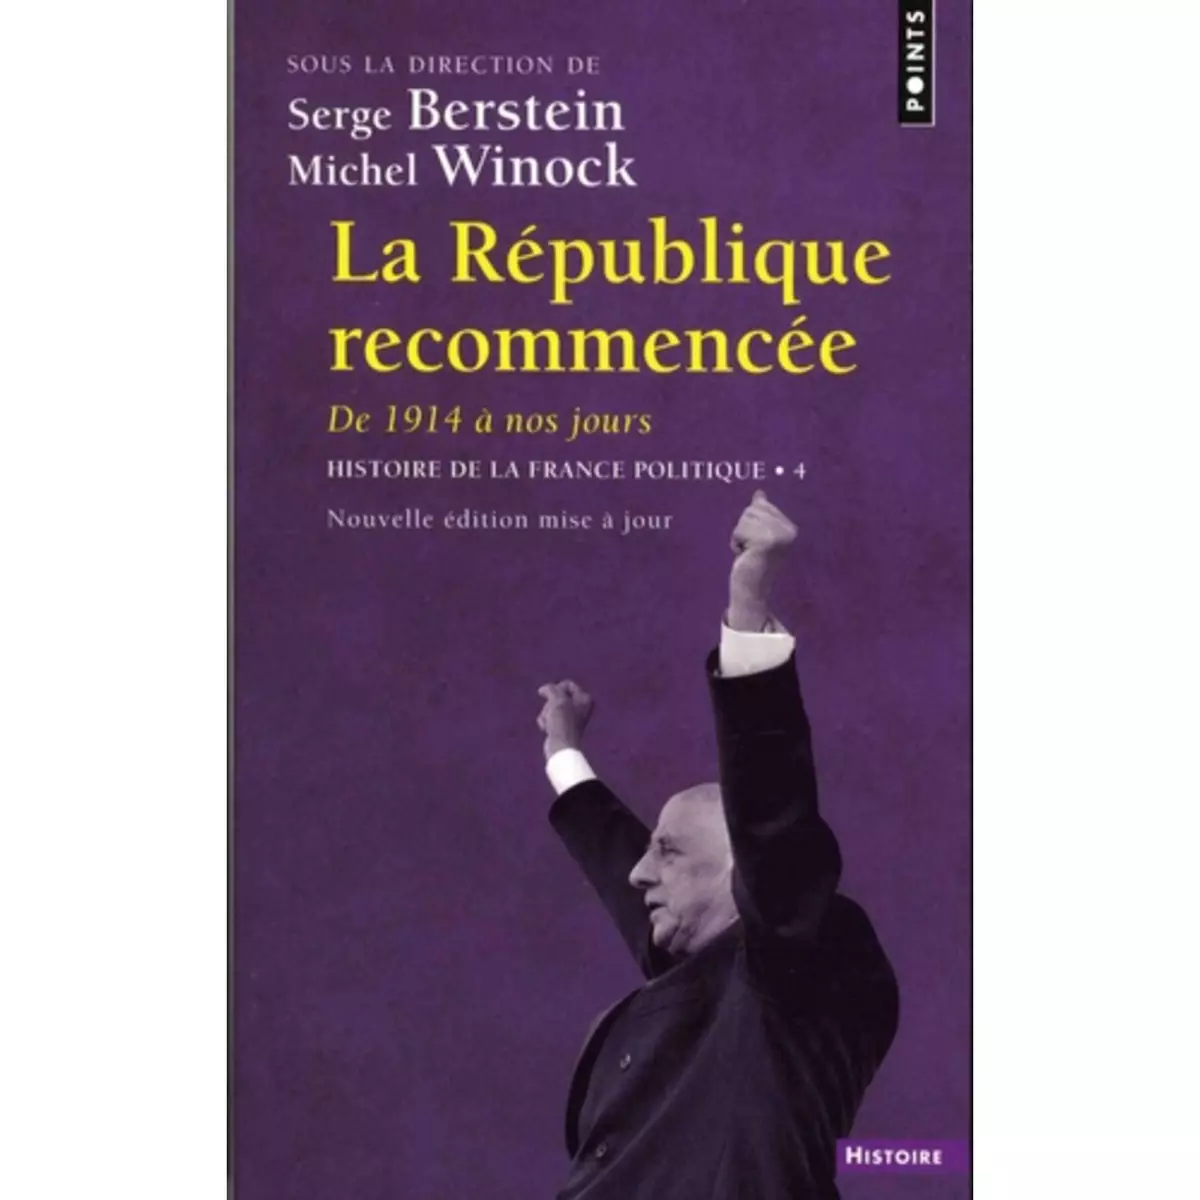  HISTOIRE DE LA FRANCE POLITIQUE. TOME 4, LA REPUBLIQUE RECOMMENCEE, DE 1914 A NOS JOURS, Berstein Serge